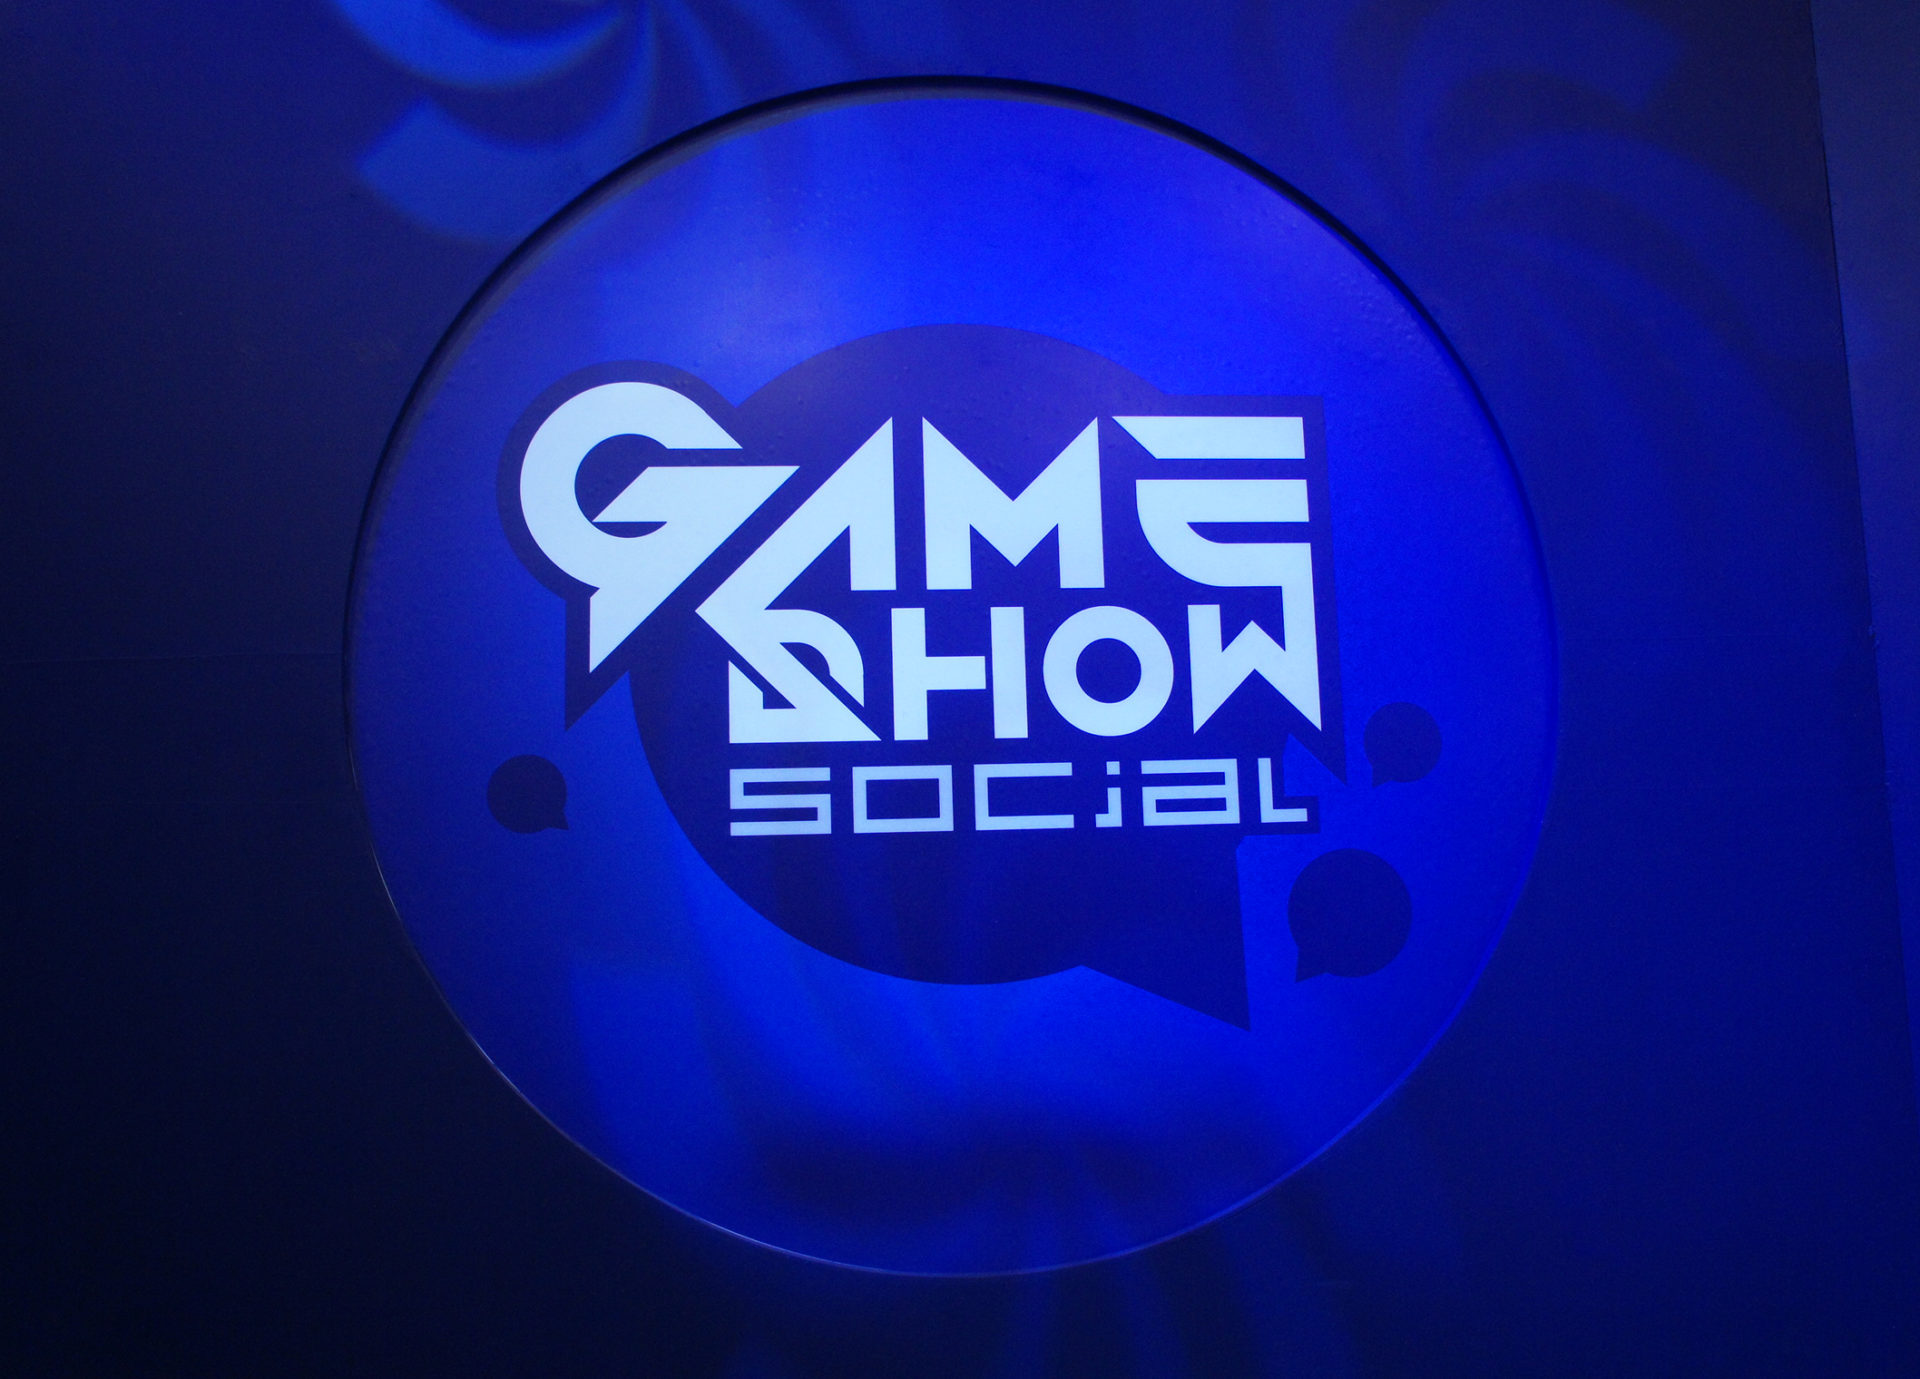 ประกาศอัพเดทการปิดระบบชั่วคราวจาก Game Show Social